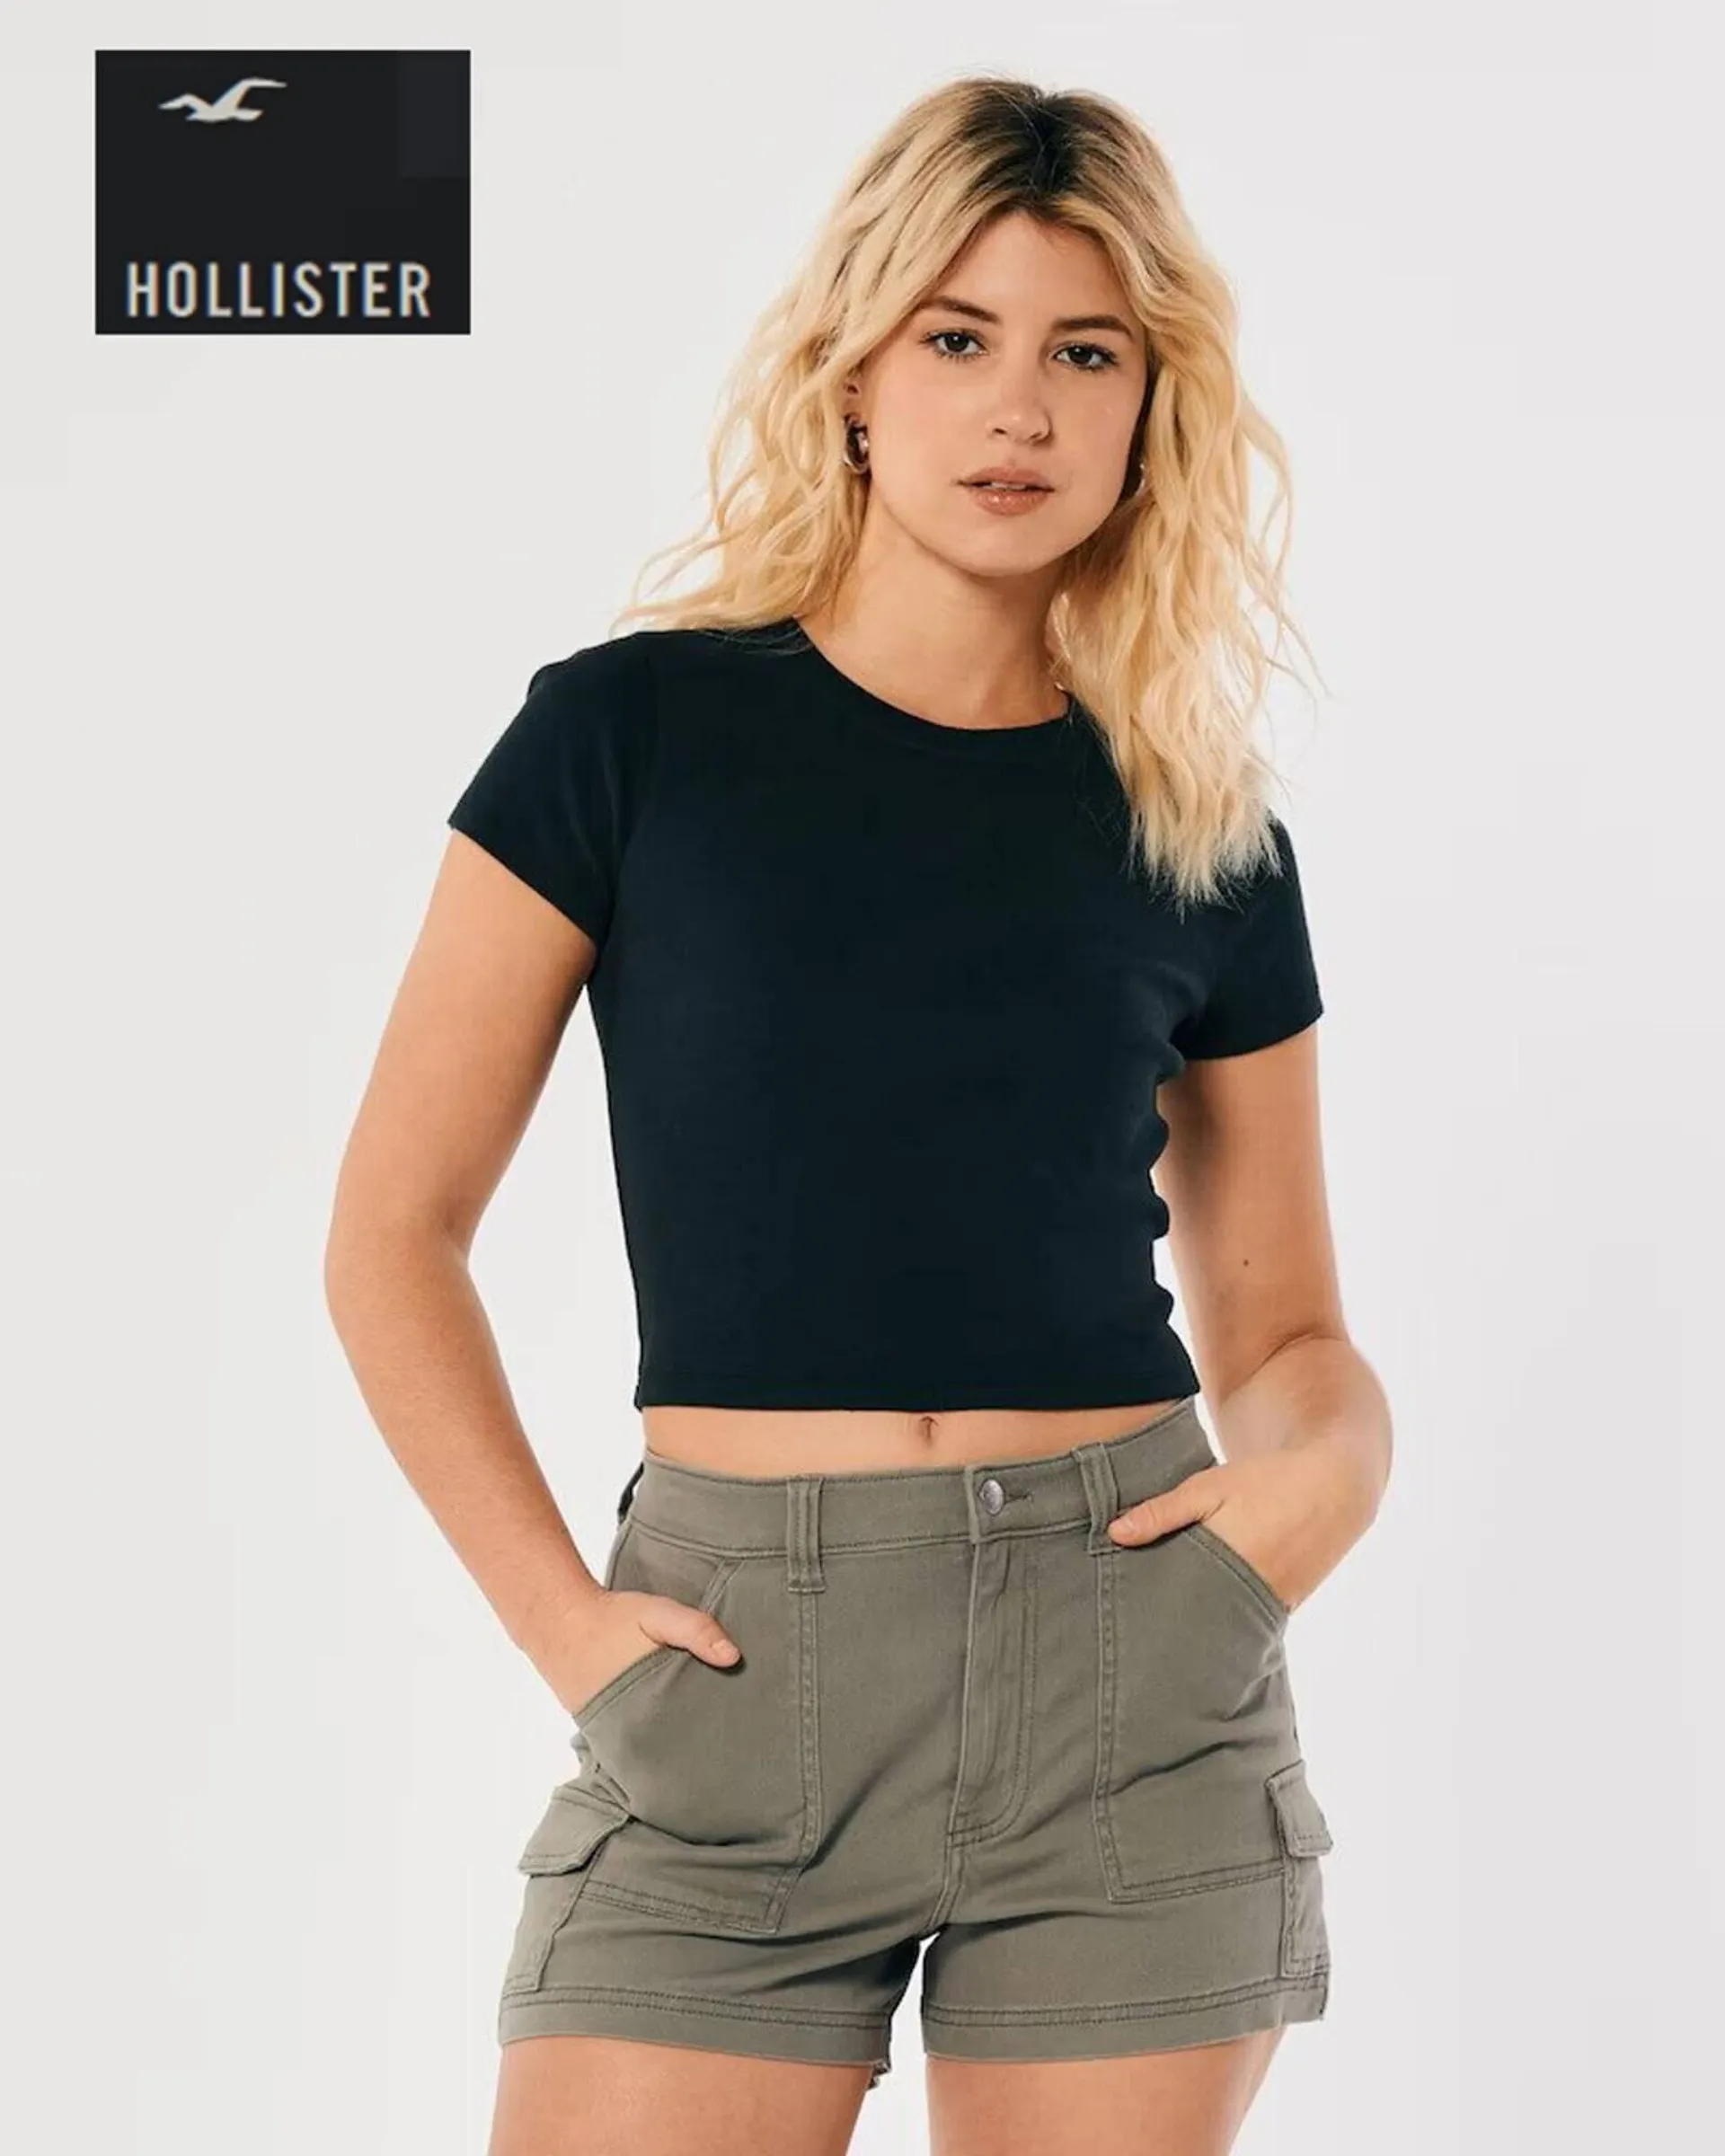 Catalogue Hollister